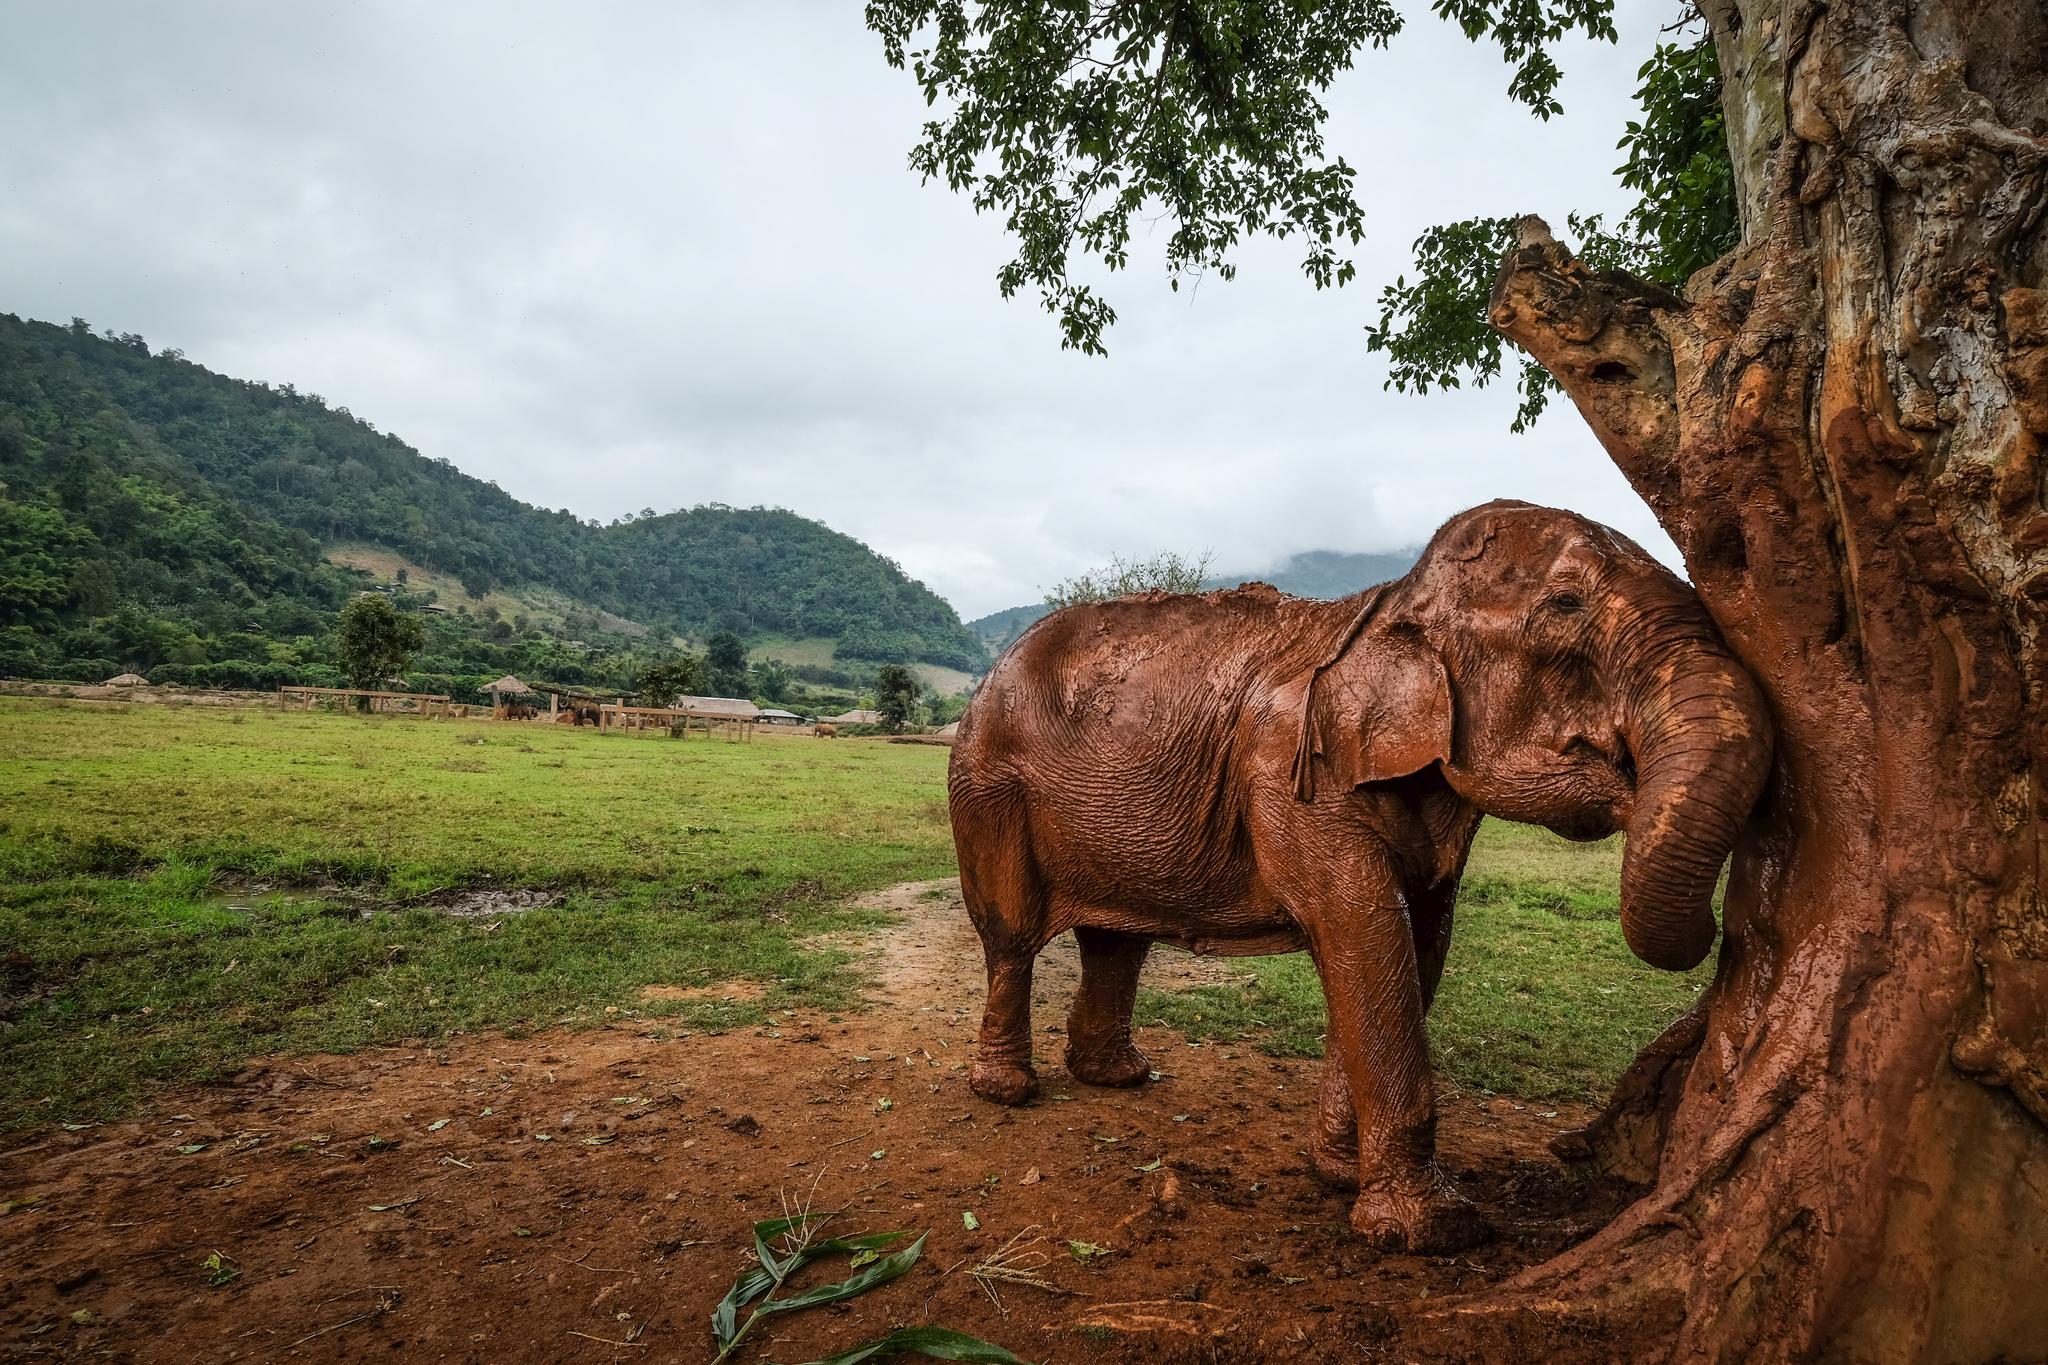 ENDELIG FRI:  – Det tok lang tid før hun ble så trygg med folk, sier guide og elefantpasser Tanwamas «Som» Khaikaew om den gamle elefanten Saza. Etter 70 år som ridedyr har hun funnet sitt fristed her i Chiang Mai.